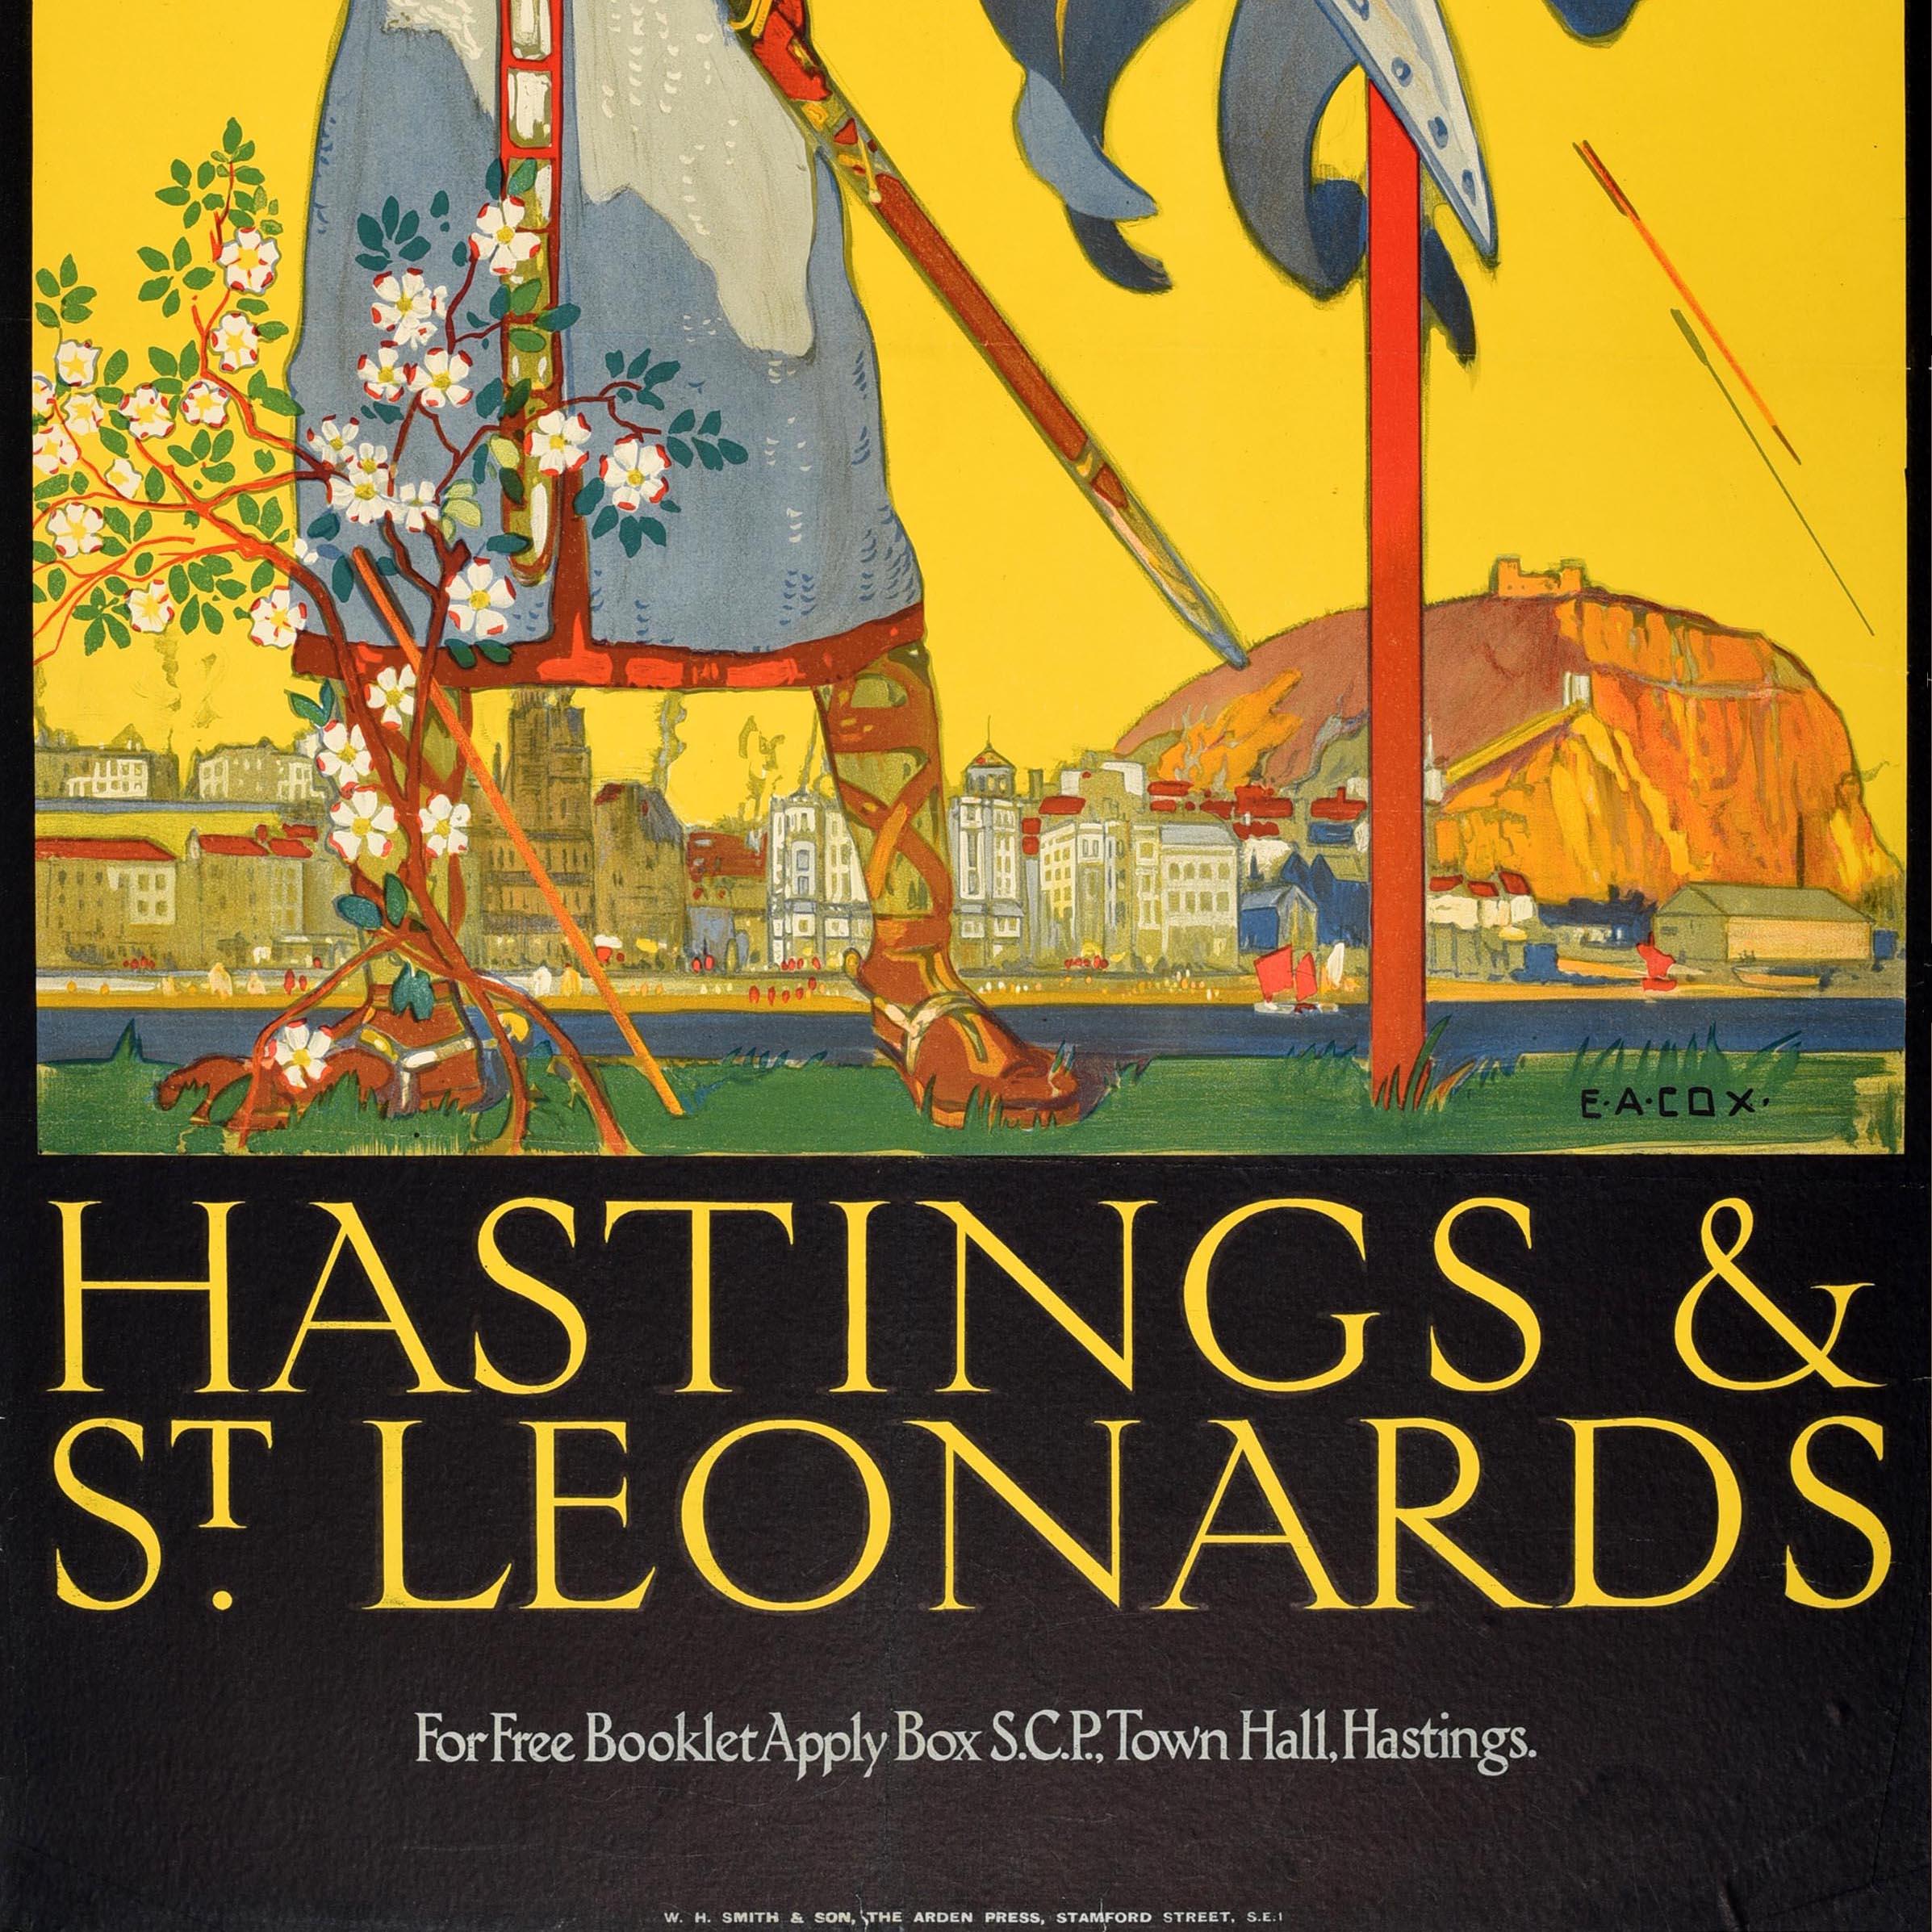 Originelles Vintage-Reiseplakat für die historischen Städte Hastings und St. Leonards an der Südküste von Sussex mit einem atemberaubenden Kunstwerk des britischen Malers Elijah Albert Cox (1876-1955), das Pfeile zeigt, die auf einen englischen